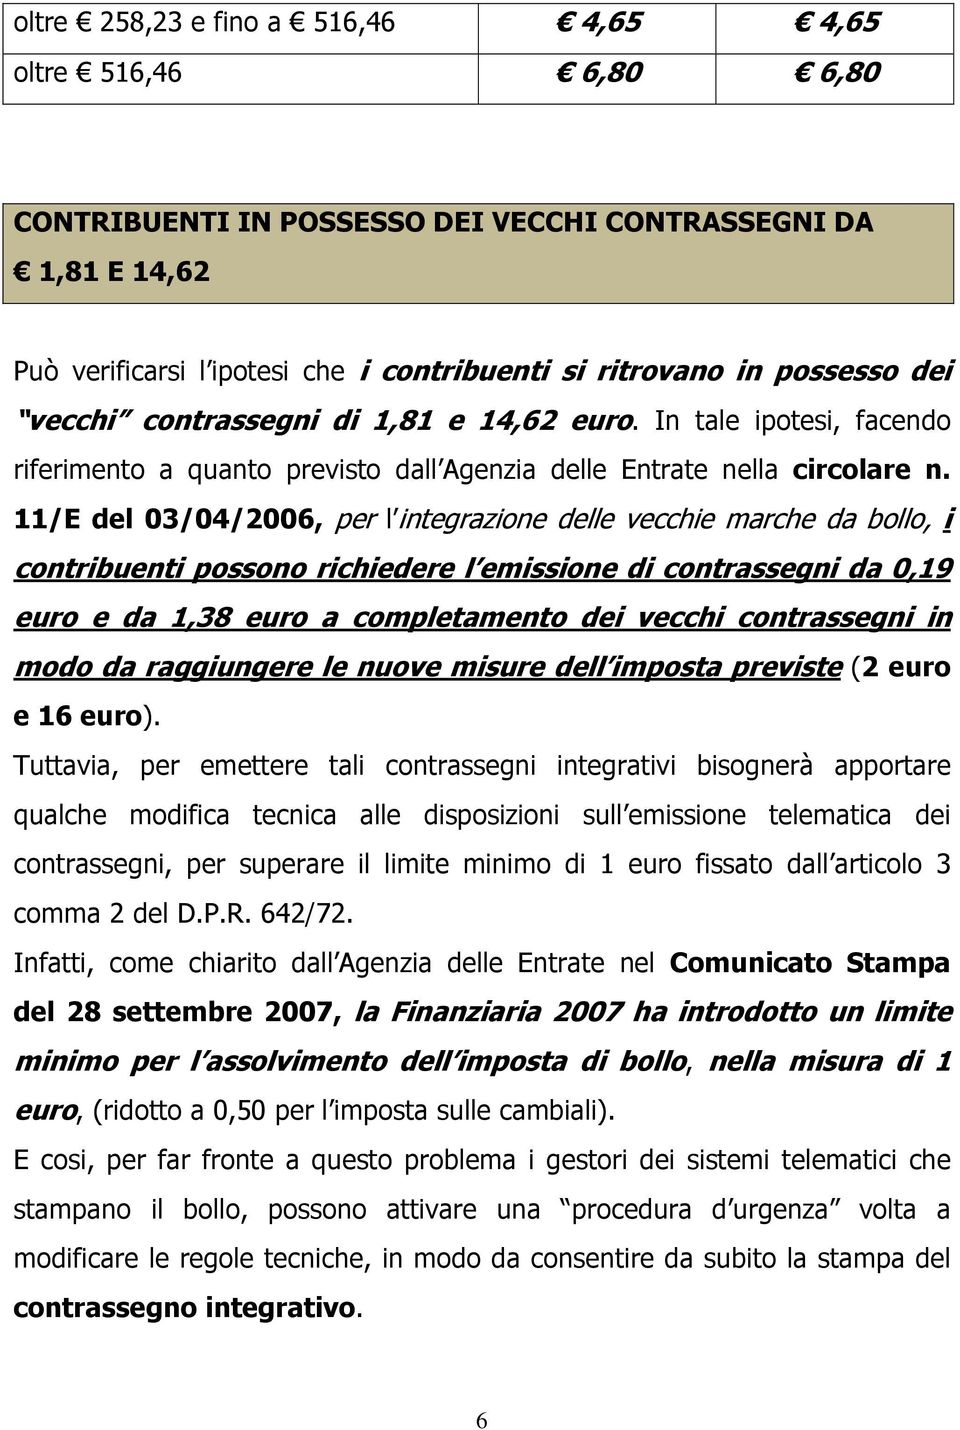 11/E del 03/04/2006, per l integrazione delle vecchie marche da bollo, i contribuenti possono richiedere l emissione di contrassegni da 0,19 euro e da 1,38 euro a completamento dei vecchi